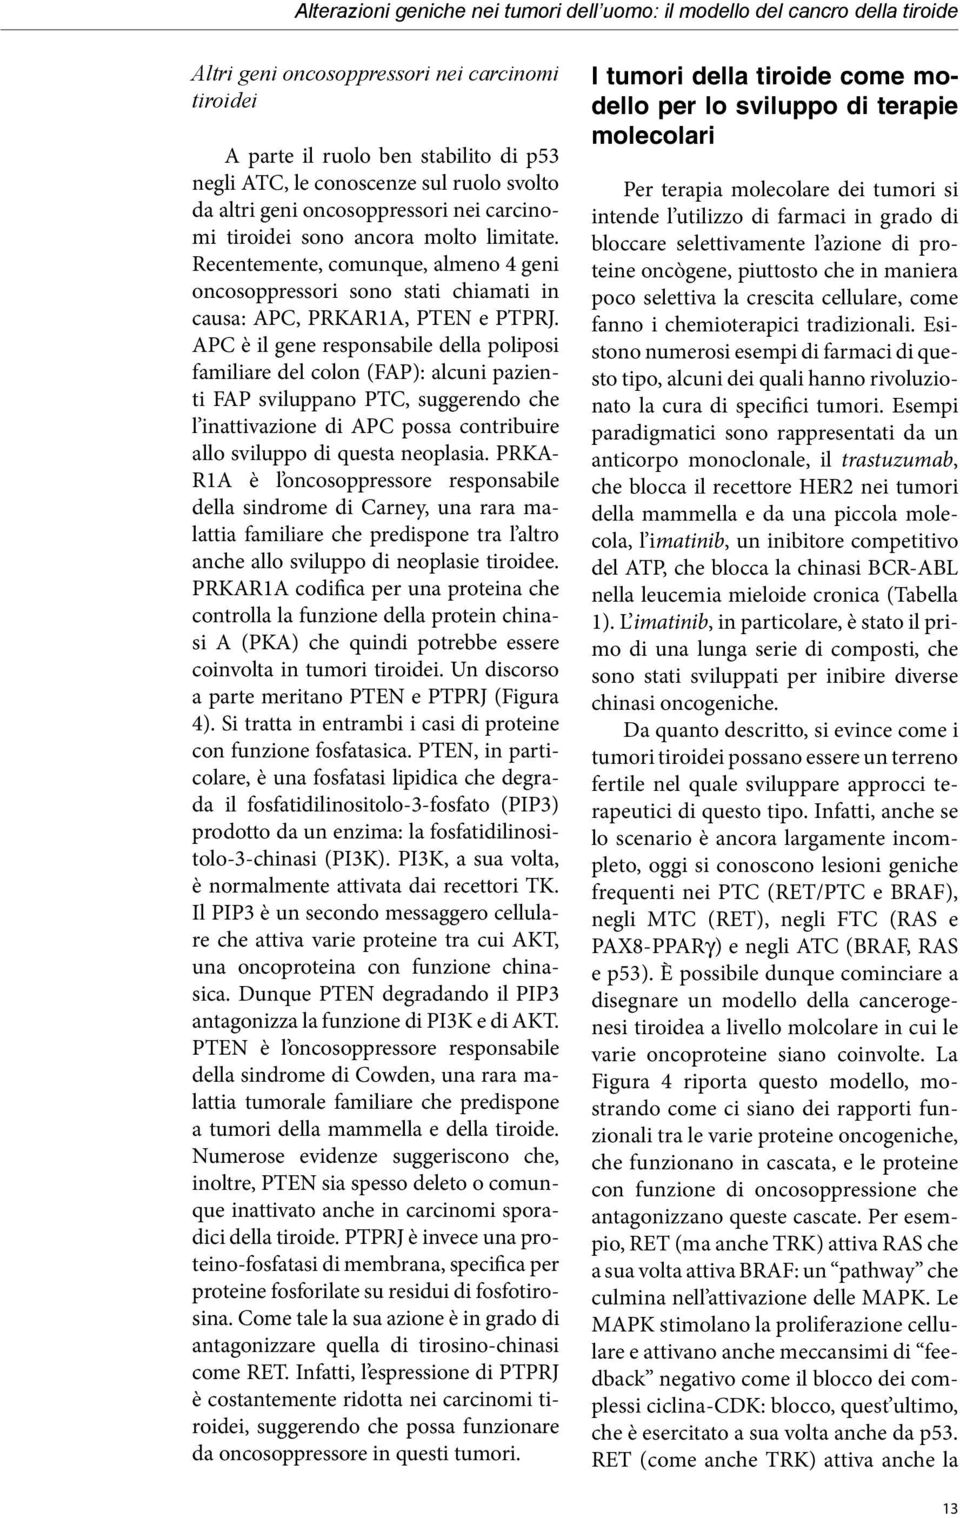 Recentemente, comunque, almeno 4 geni oncosoppressori sono stati chiamati in causa: APC, PRKAR1A, PTEN e PTPRJ.